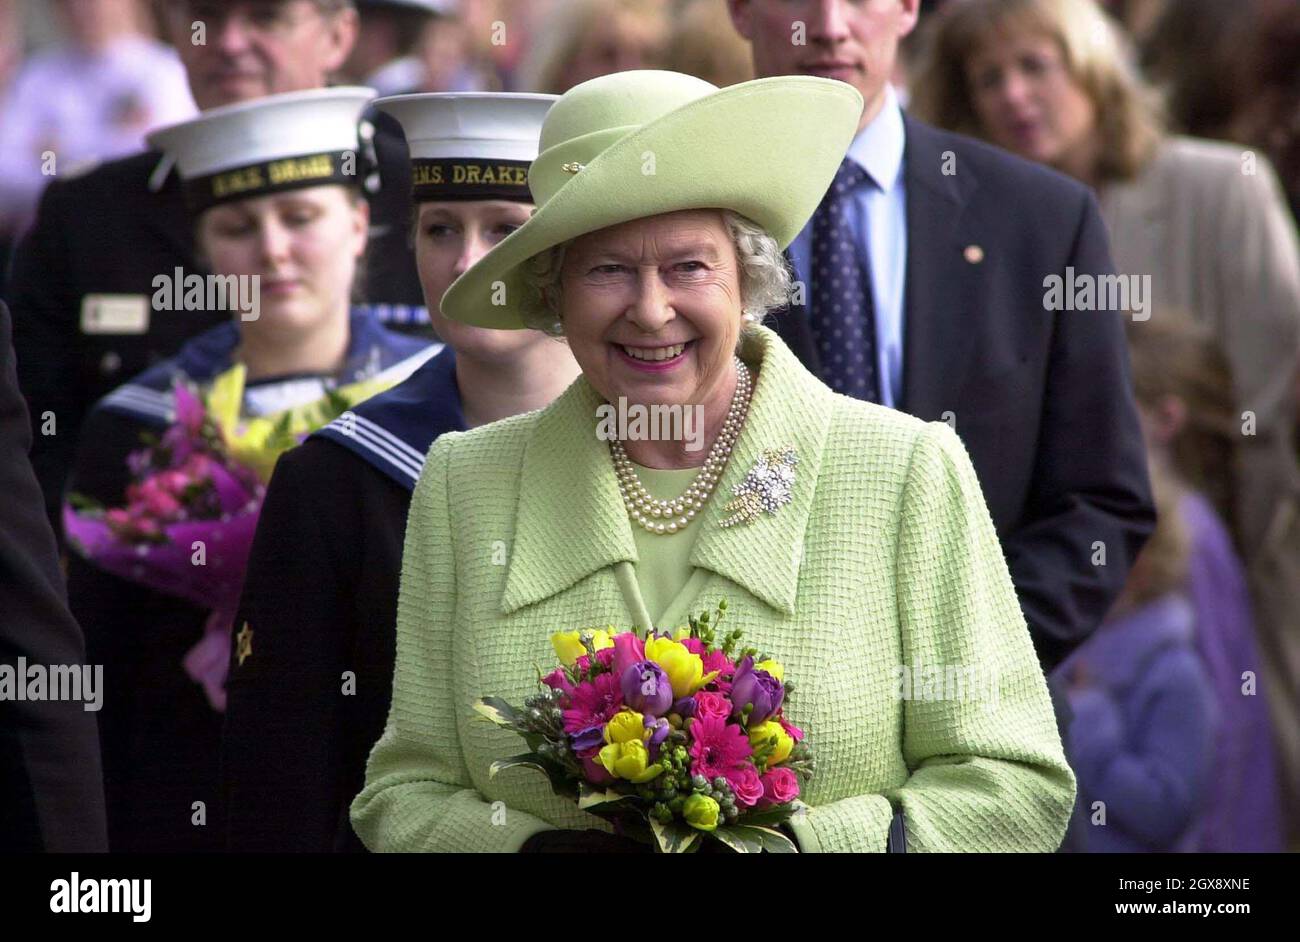 La reine Elizabeth II de Grande-Bretagne est accueillie lors de sa visite à la base navale de Devonport, Plymouth, le lundi 24 mars 2003.La Reine a rencontré des familles de ceux qui servaient dans le golfe, où elle a bavardé avec des dizaines de femmes, d'enfants, de mères et de pères.Le duc d'Édimbourg, qui est arrivé séparément, a également passé du temps à parler aux familles.Demi-longueur, chapeau, royals, souriant, fleurs - Anwar Hussein/allaction.co.uk Banque D'Images